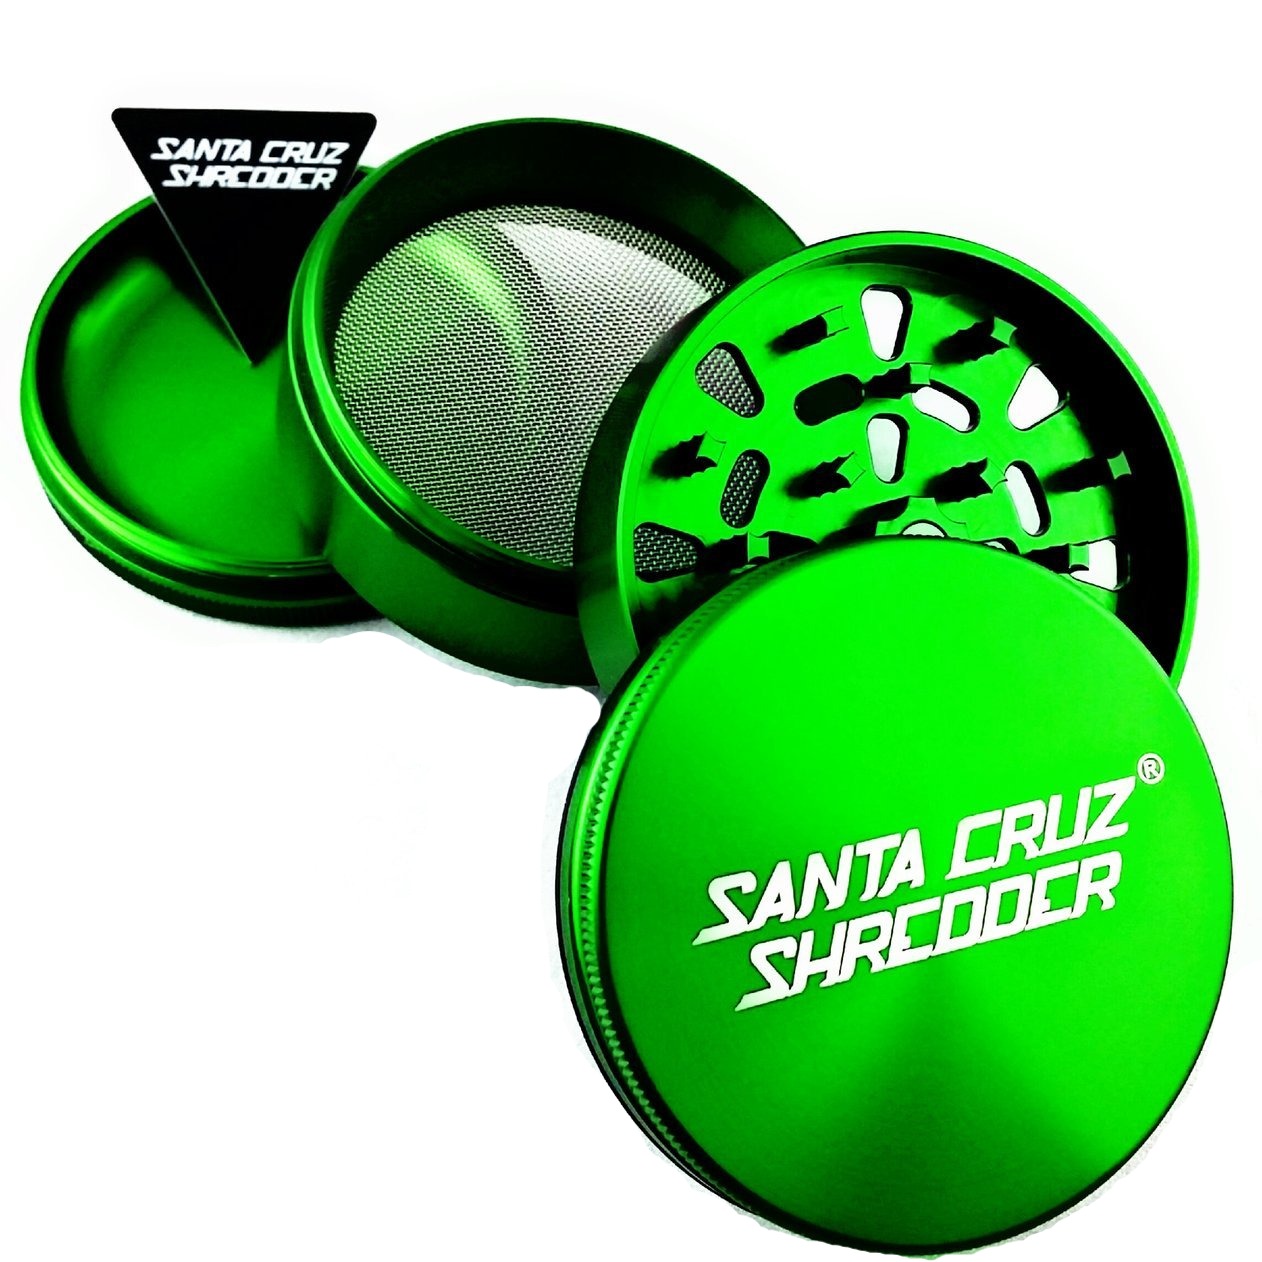 Santa Cruz Shredder Large 4 Piece Grinder (Green) show variants